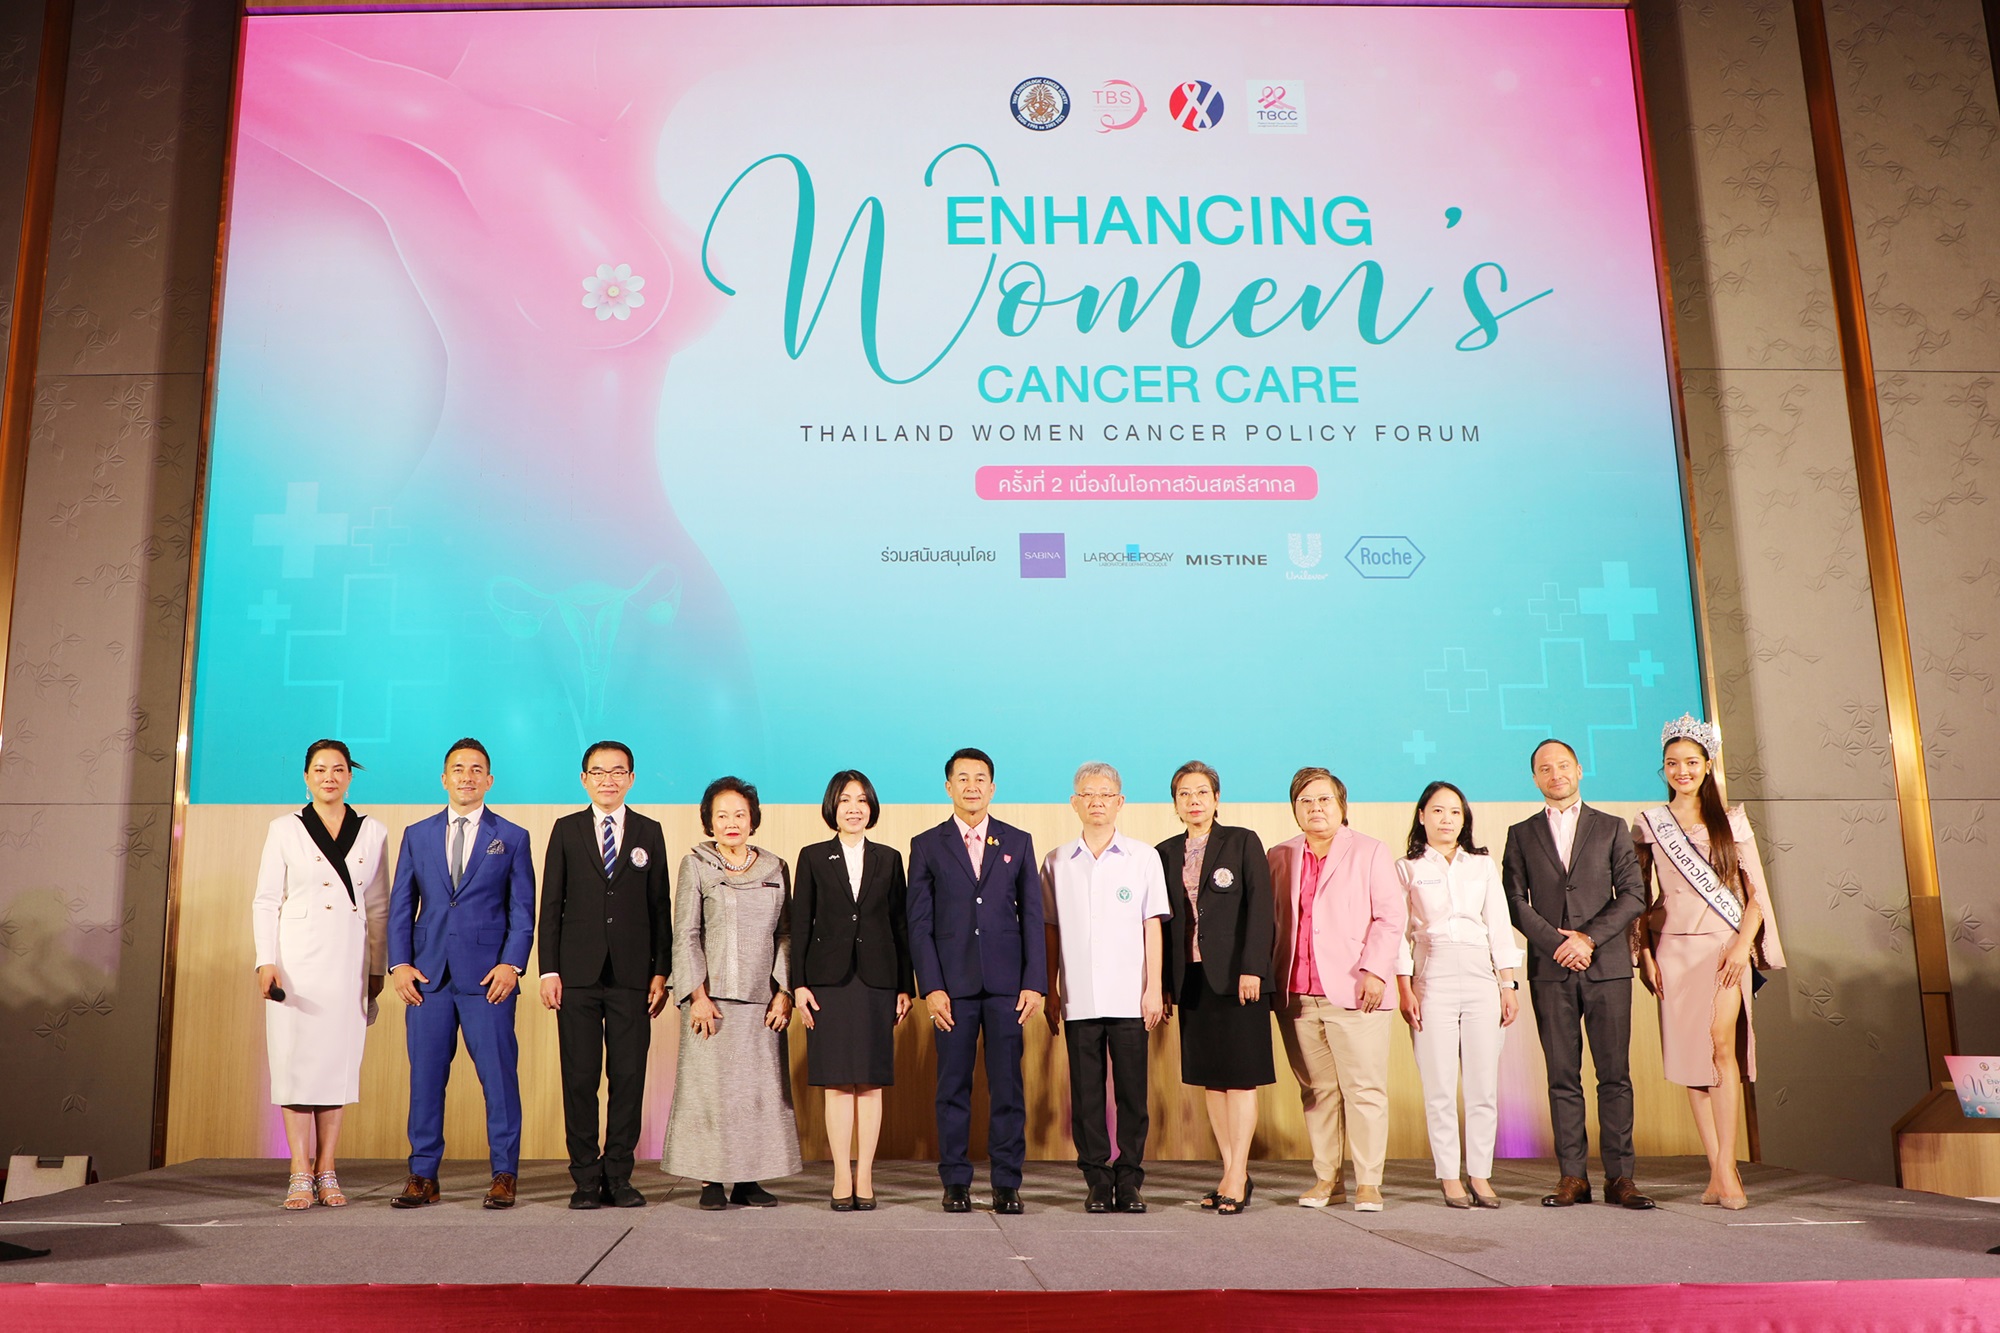 บริษัท ซาบีน่า จำกัด (มหาชน) ร่วมงานการประชุมหารือเสริมสร้างนโยบายมะเร็งในสตรีและโอกาสของการดูแลมะเร็งในสตรีภายใต้หัวข้อ “Enchancing Women’s Cancer Care: Thailand Women Cancer Policy Forum ครั้งที่ 2 เนื่องในโอกาสวันสตรีสากล